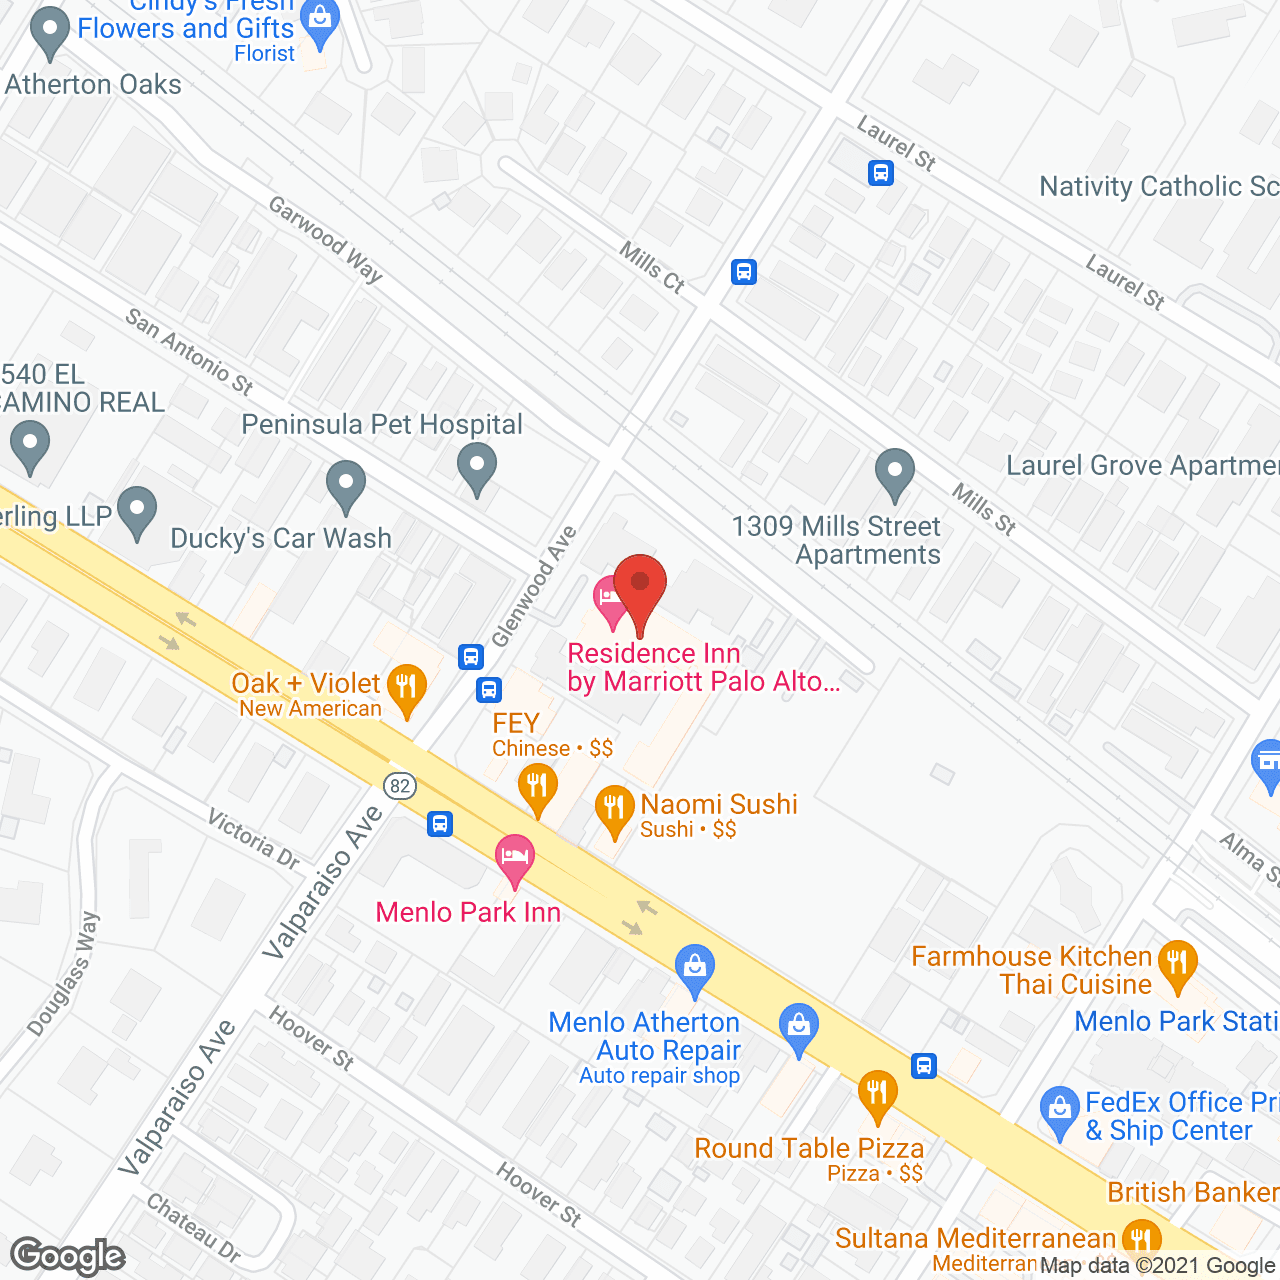 Glenwood Inn-CLOSED in google map